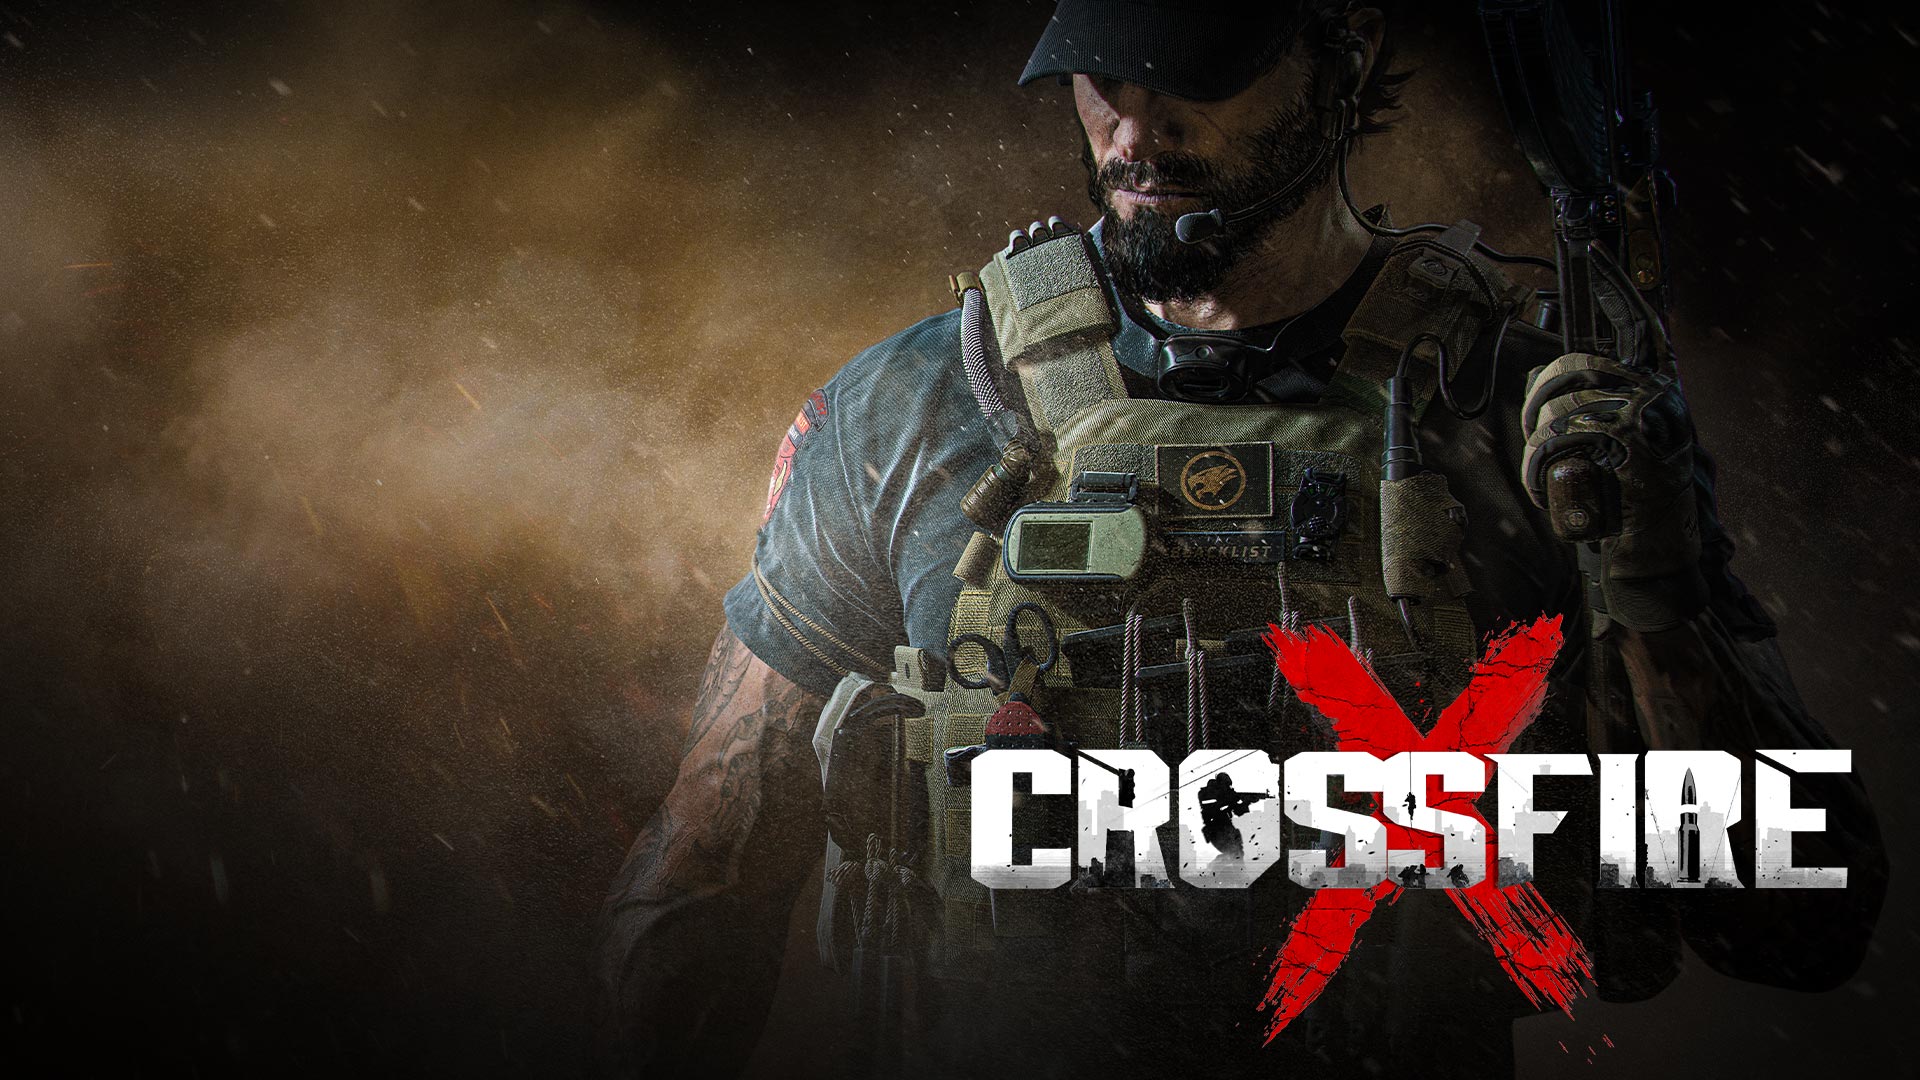 CrossfireX, een zwaarbewapende man staat tussen rook en as